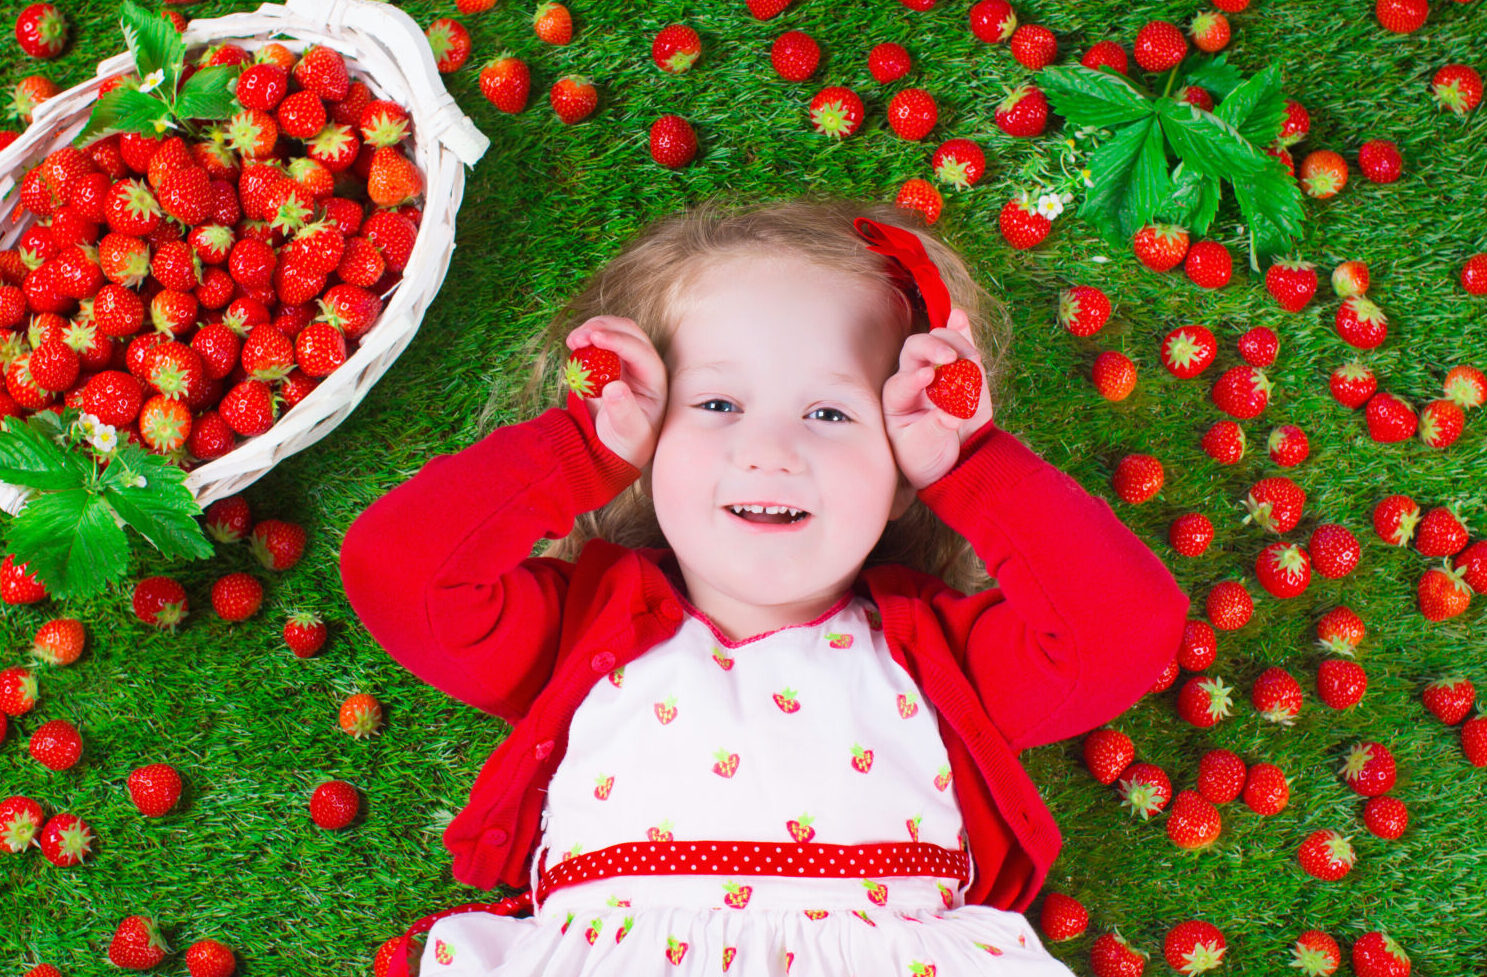 girl-strawberries-ground